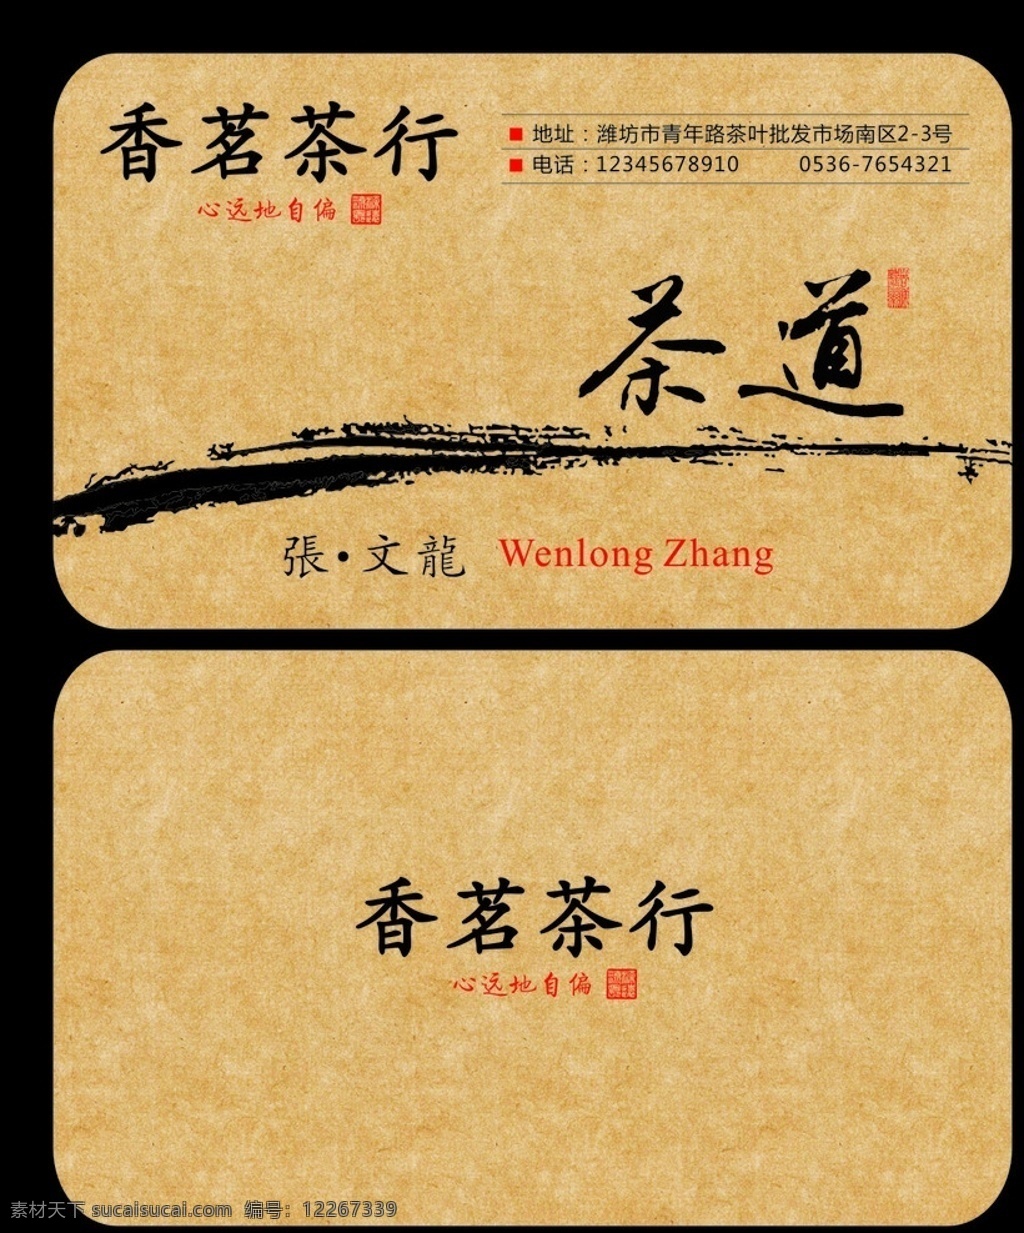 高档茶叶名片 高档名片 茶叶名片 牛皮纸 矢量 名片样式 创意设计 名片卡片